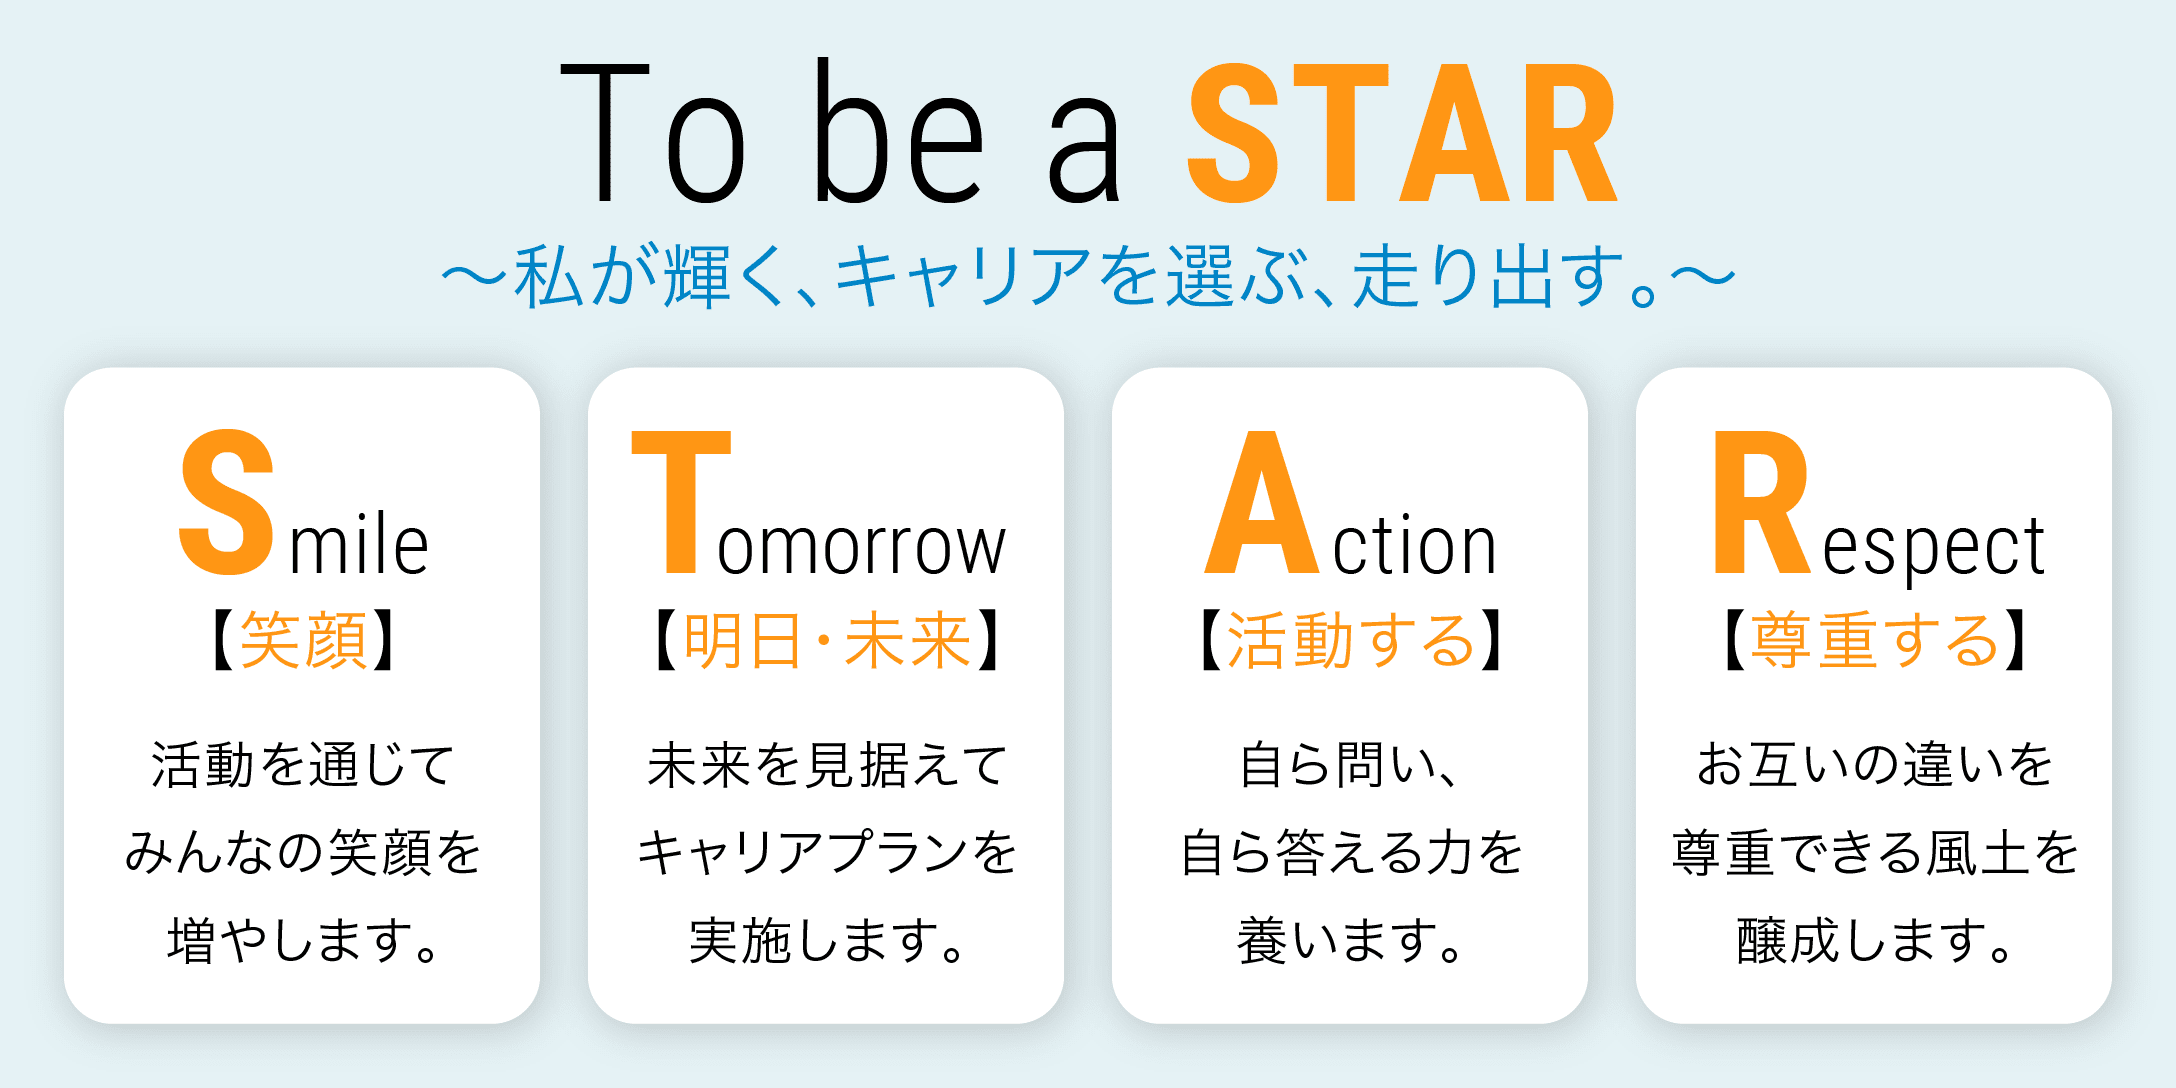 To be a STAR 〜私が輝く、キャリアを選ぶ、走り出す。〜